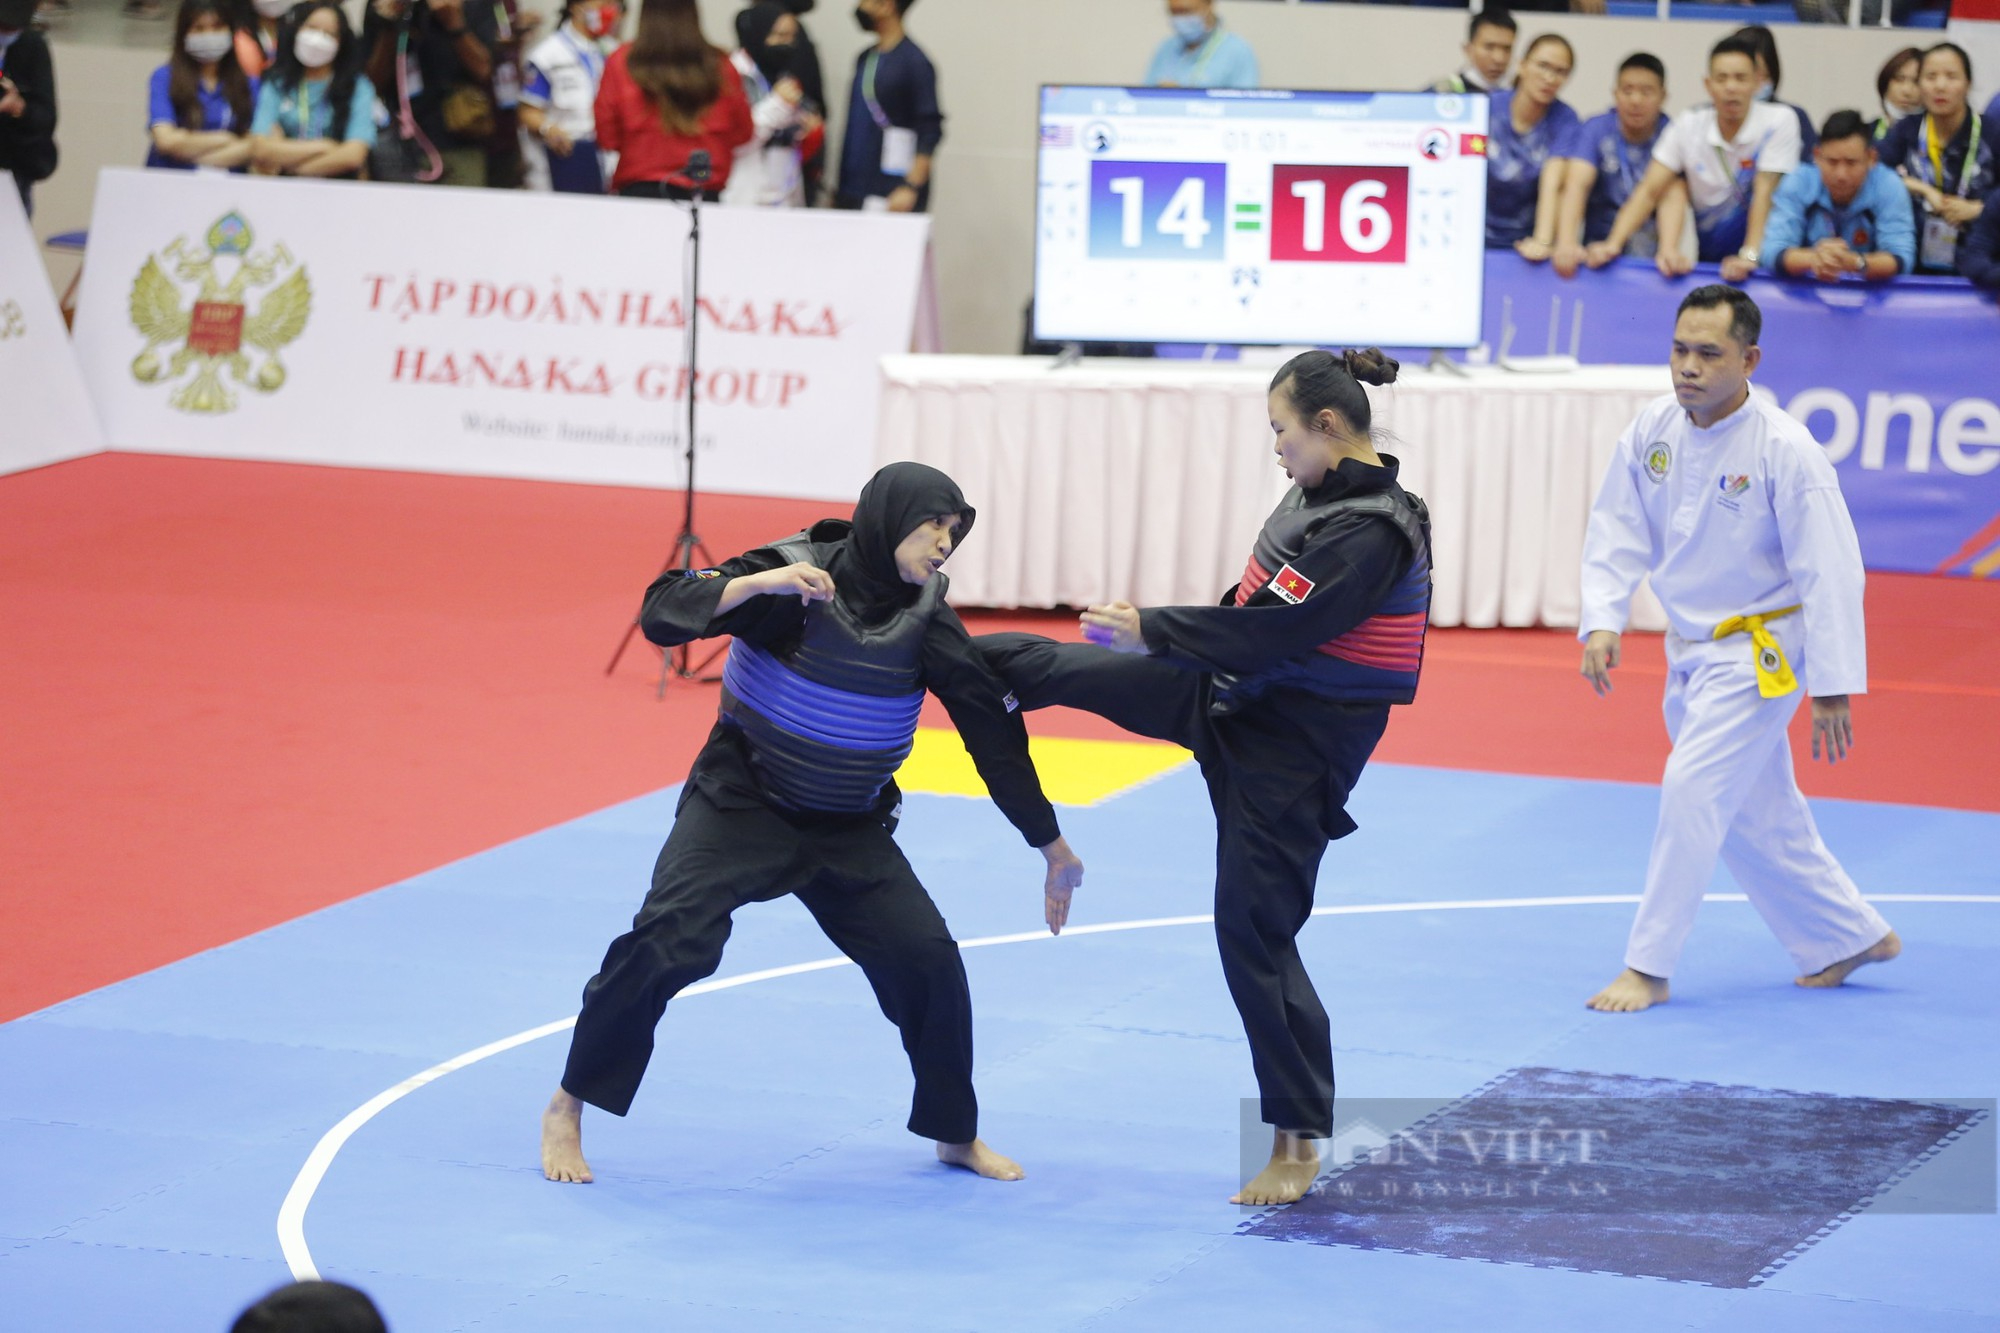 CLIP: Trận đấu Pencak silat nảy lửa giữa nữ võ sĩ người dân tộc Thái và võ sĩ Malaysia  - Ảnh 2.